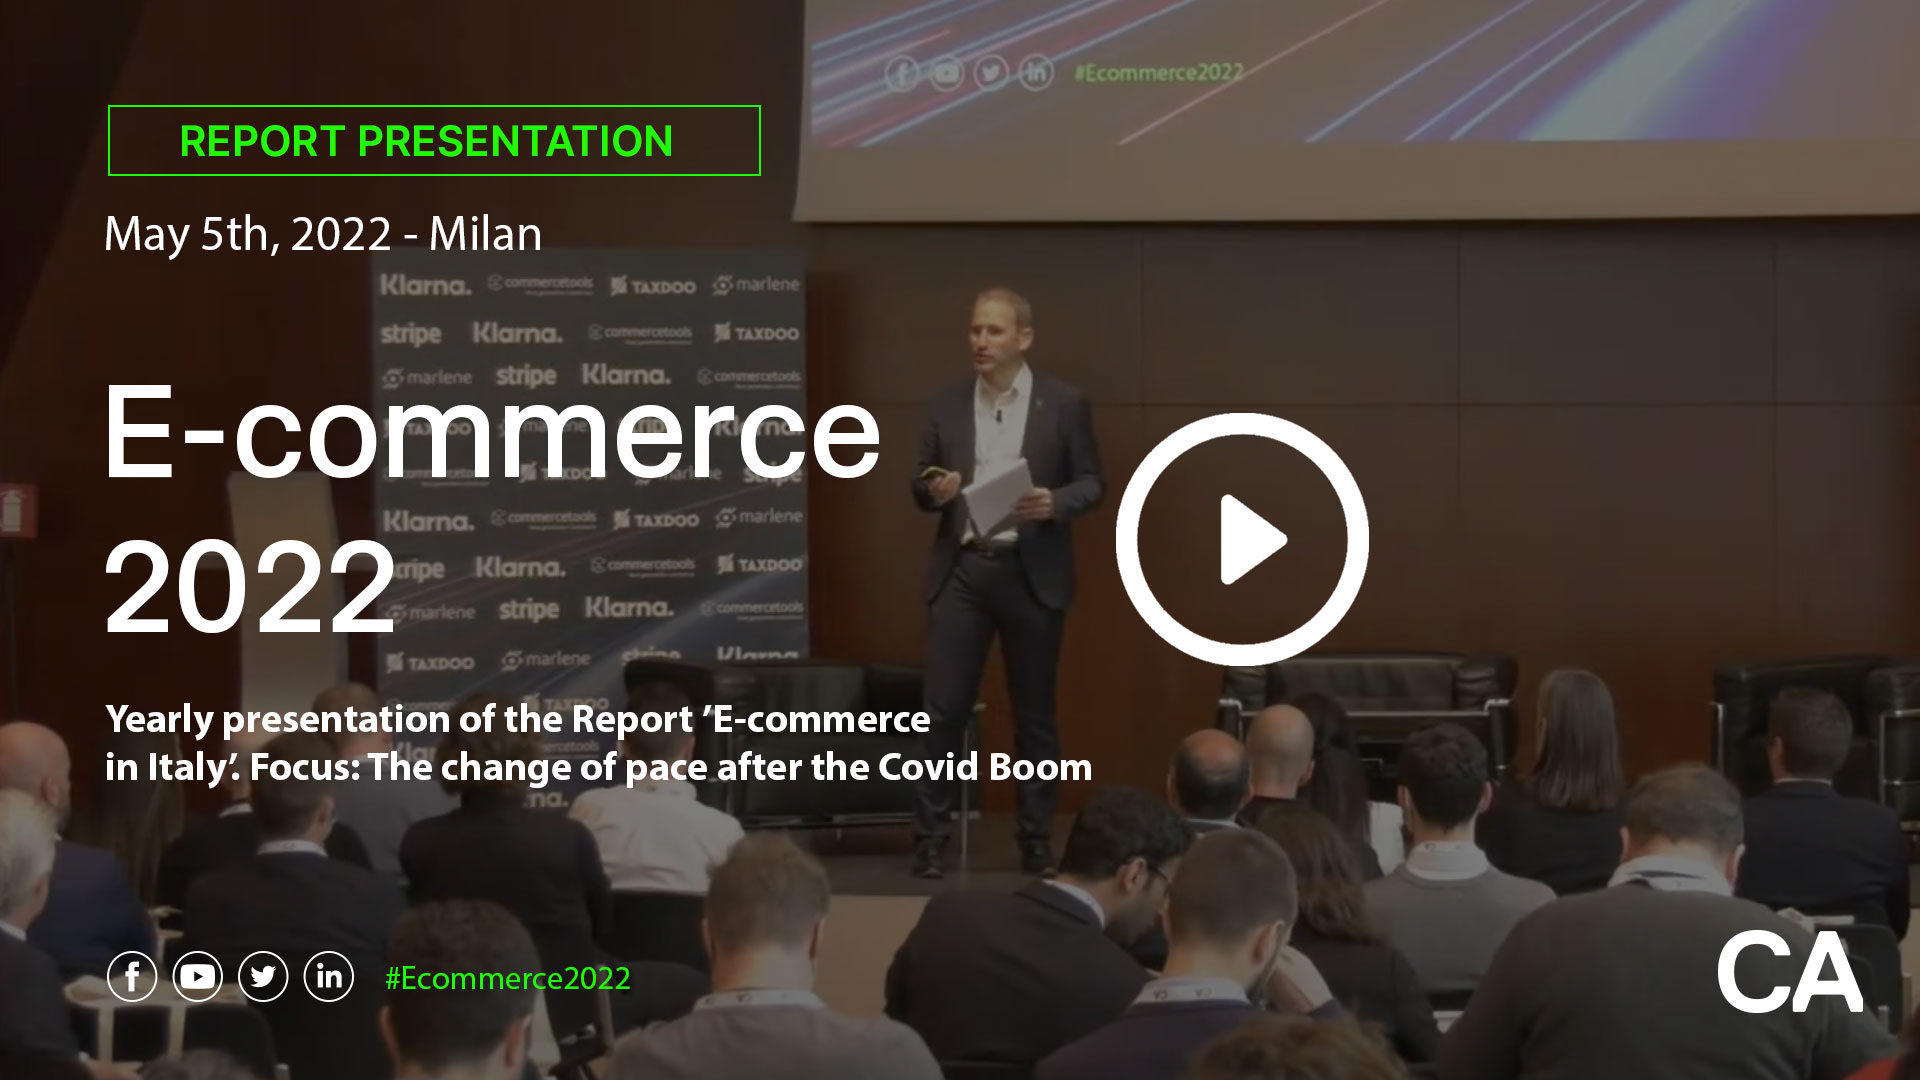 Presentazione - E-commerce in Italy 2022